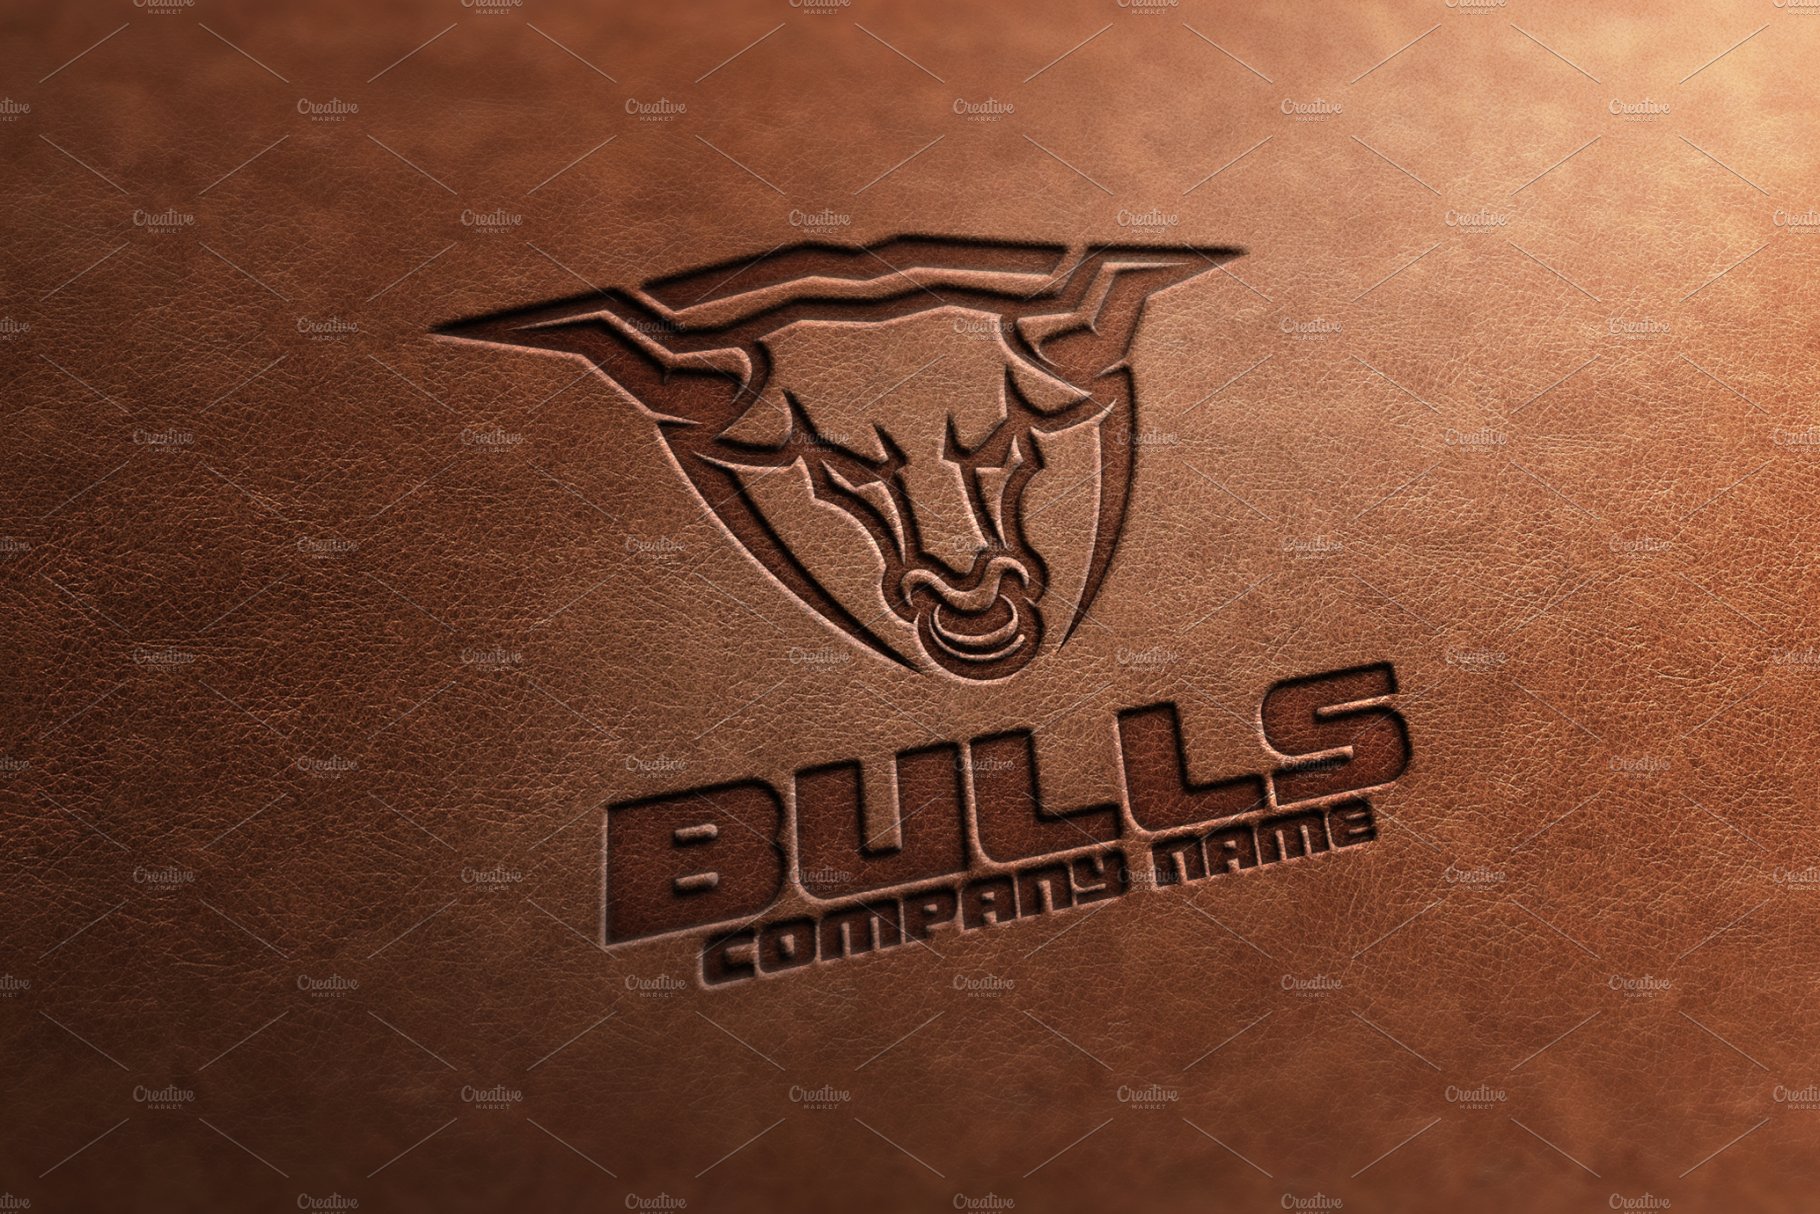 Bulls Logo preview image.